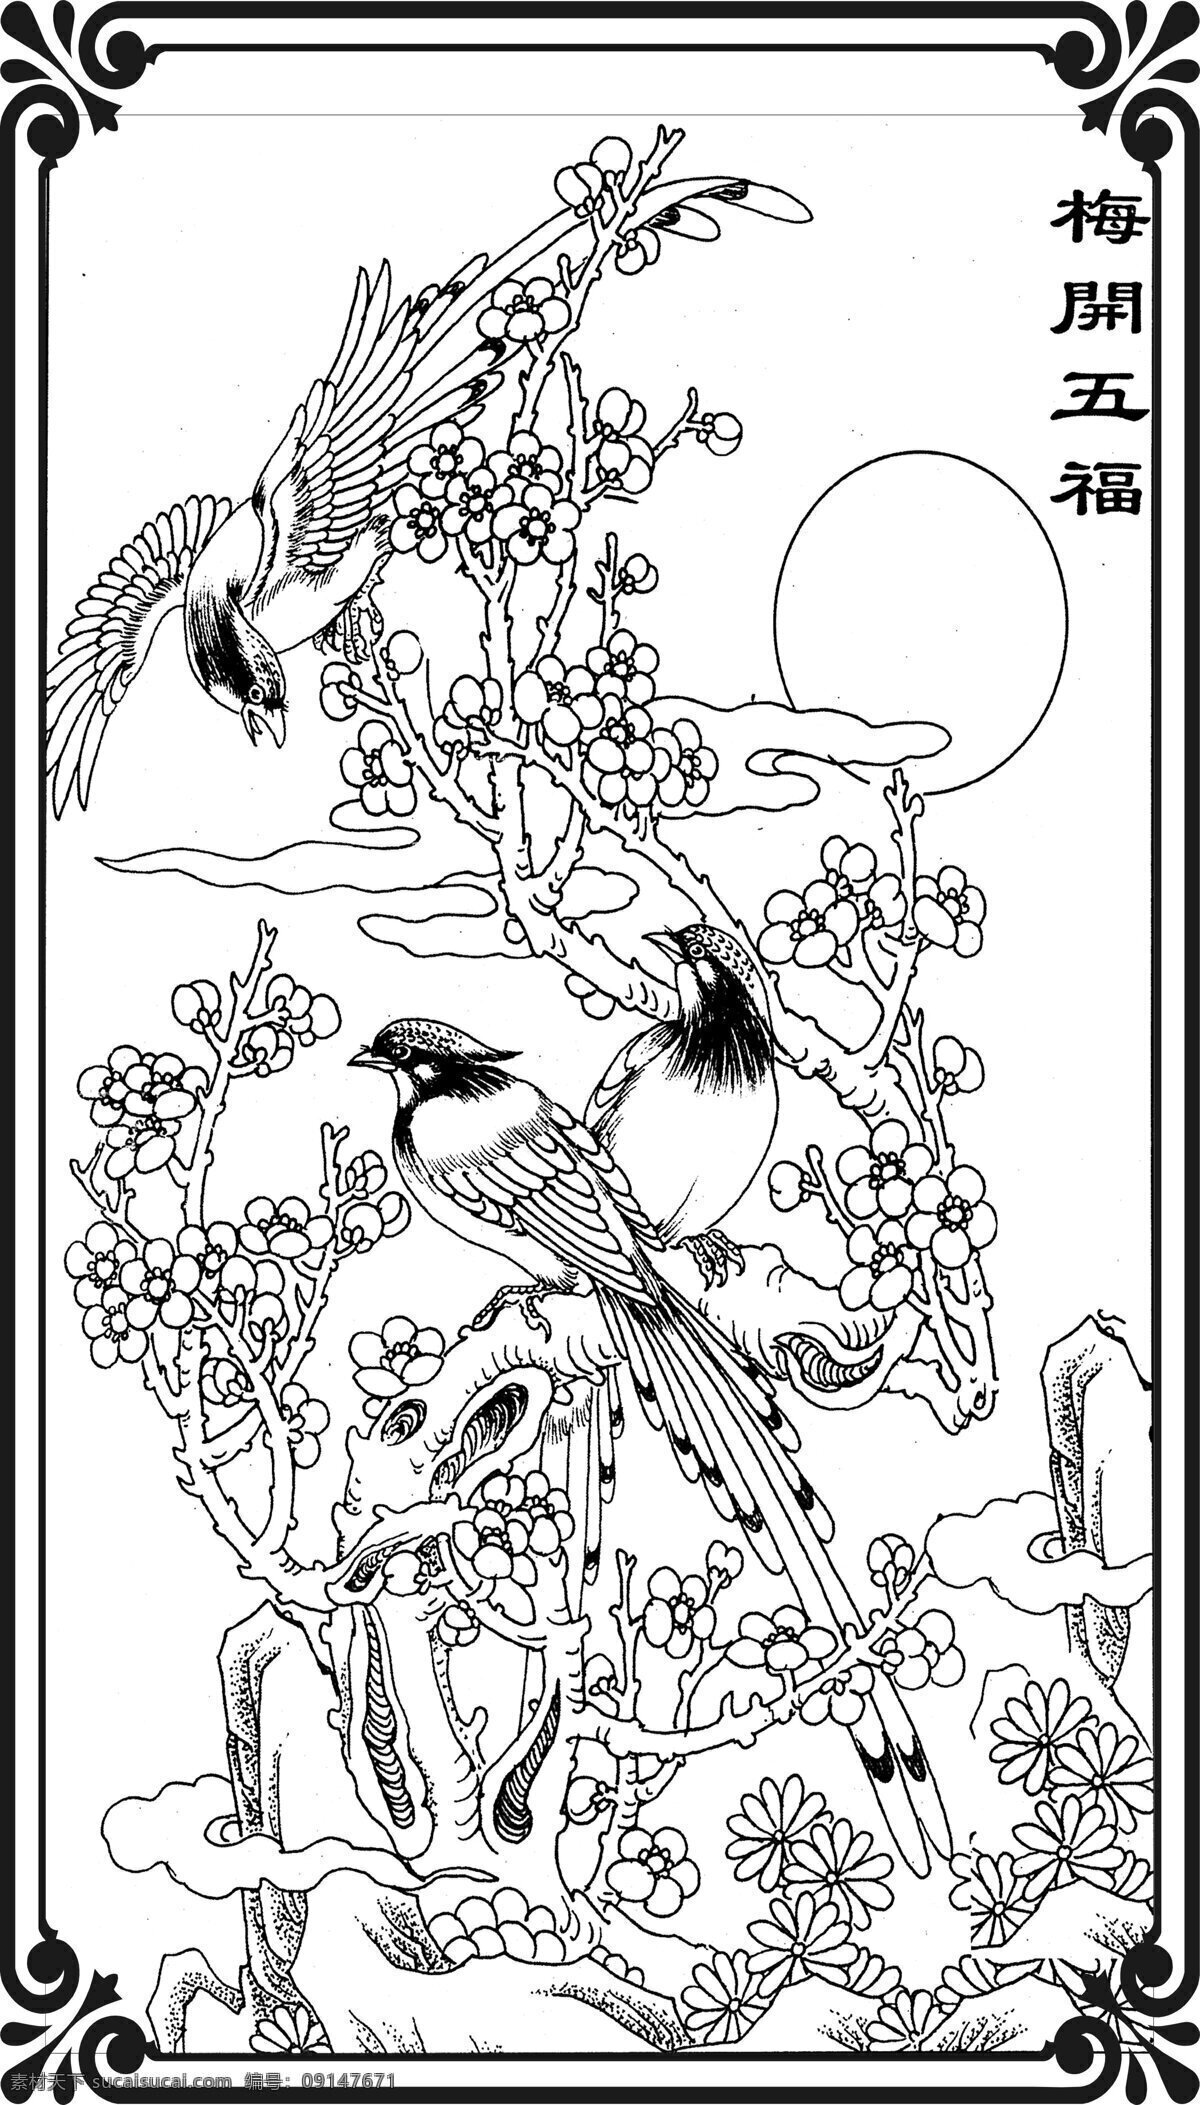 冬梅开福图片 小鸟 鸟类 花 石雕 浮雕 花卉 鸟 生物世界